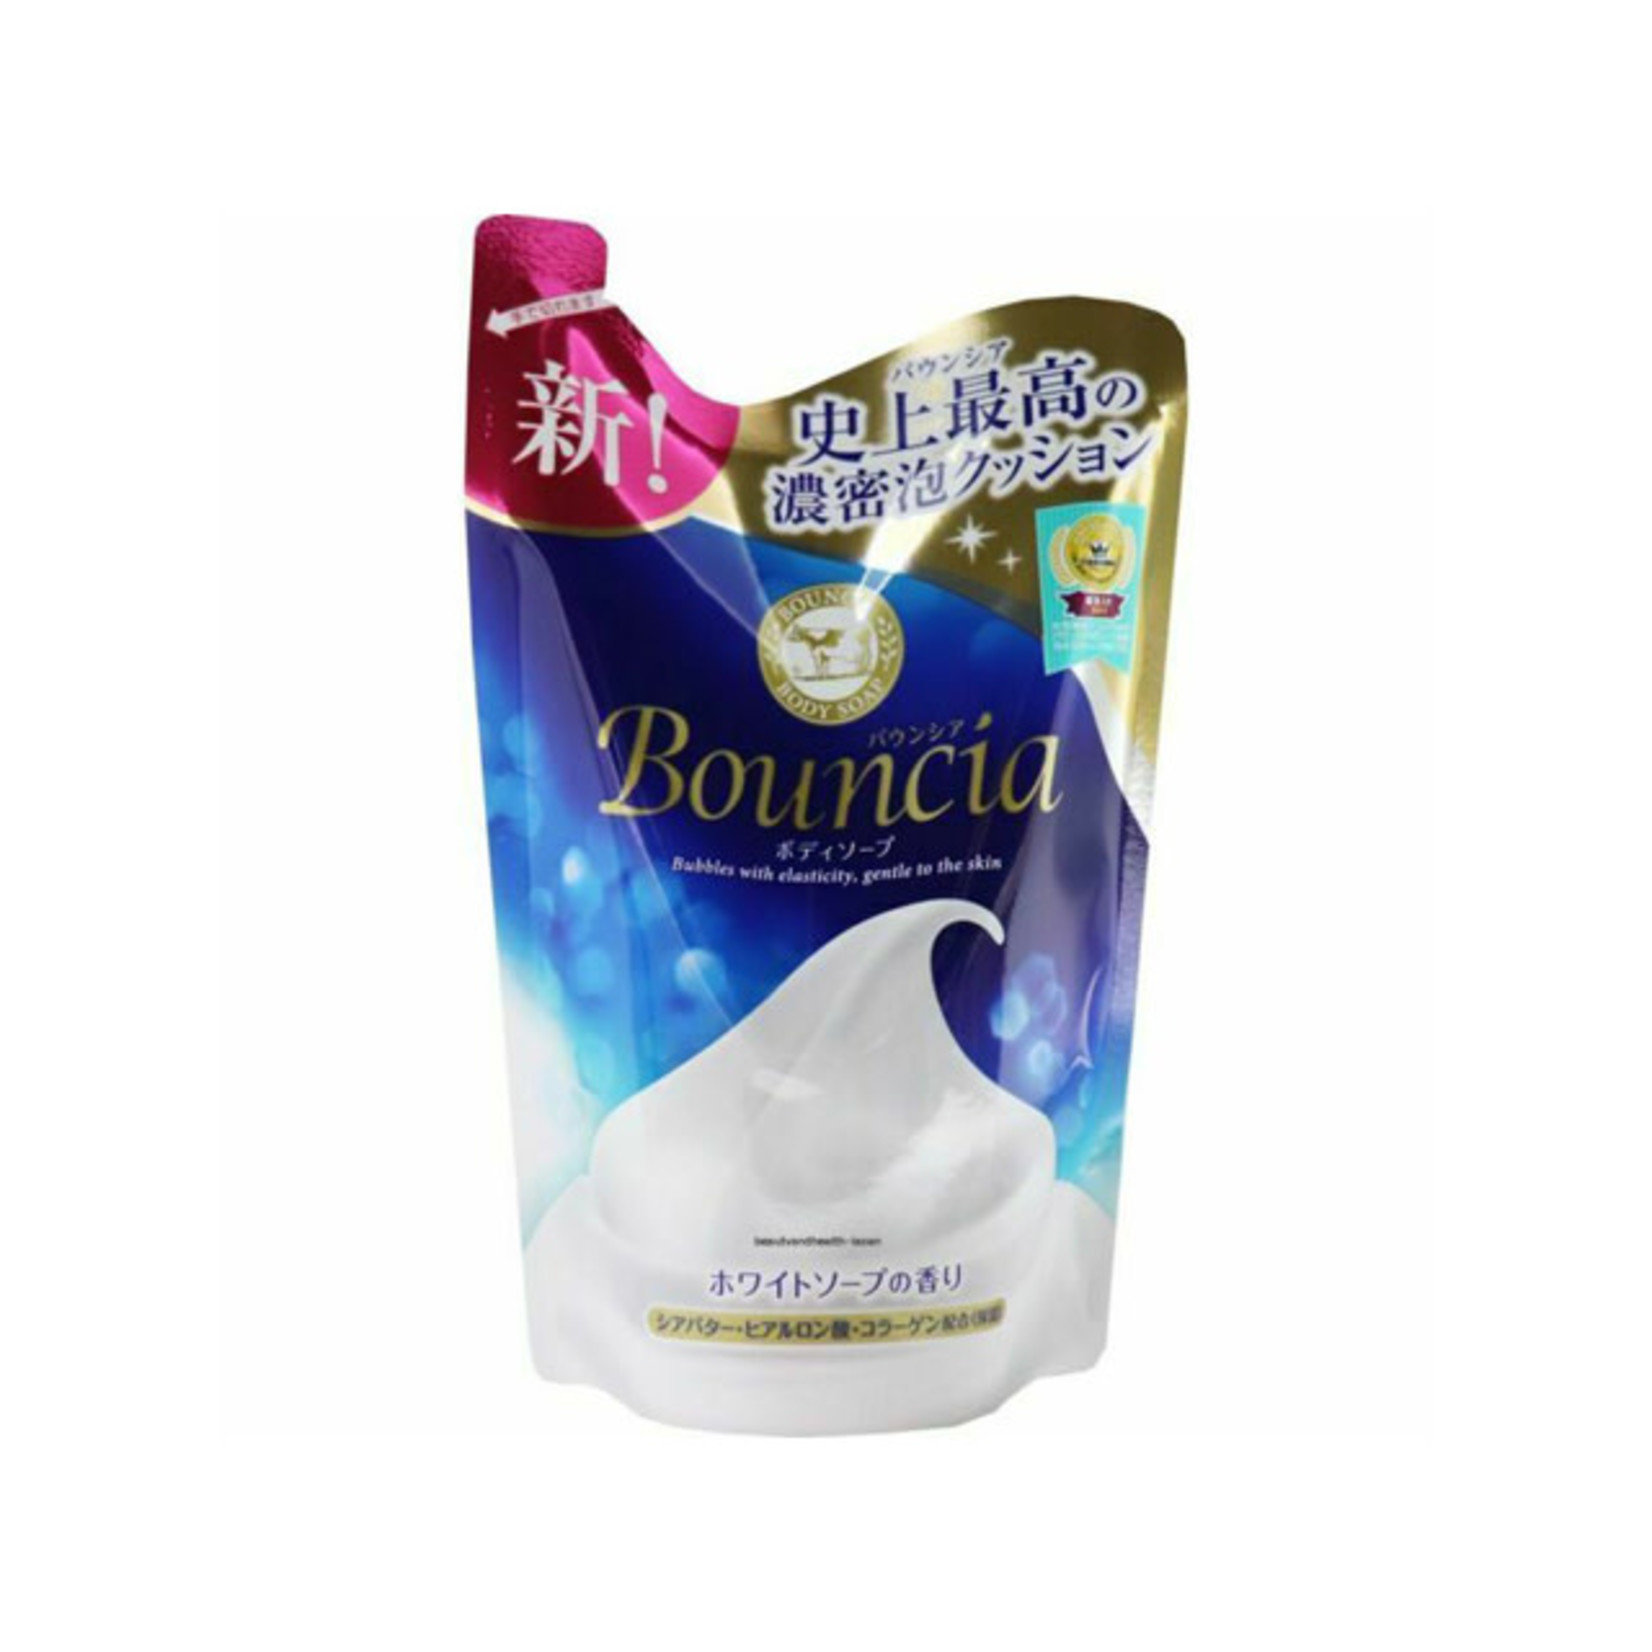 Cow Bouncia Body Soap White Soap Scent Refill 400ml